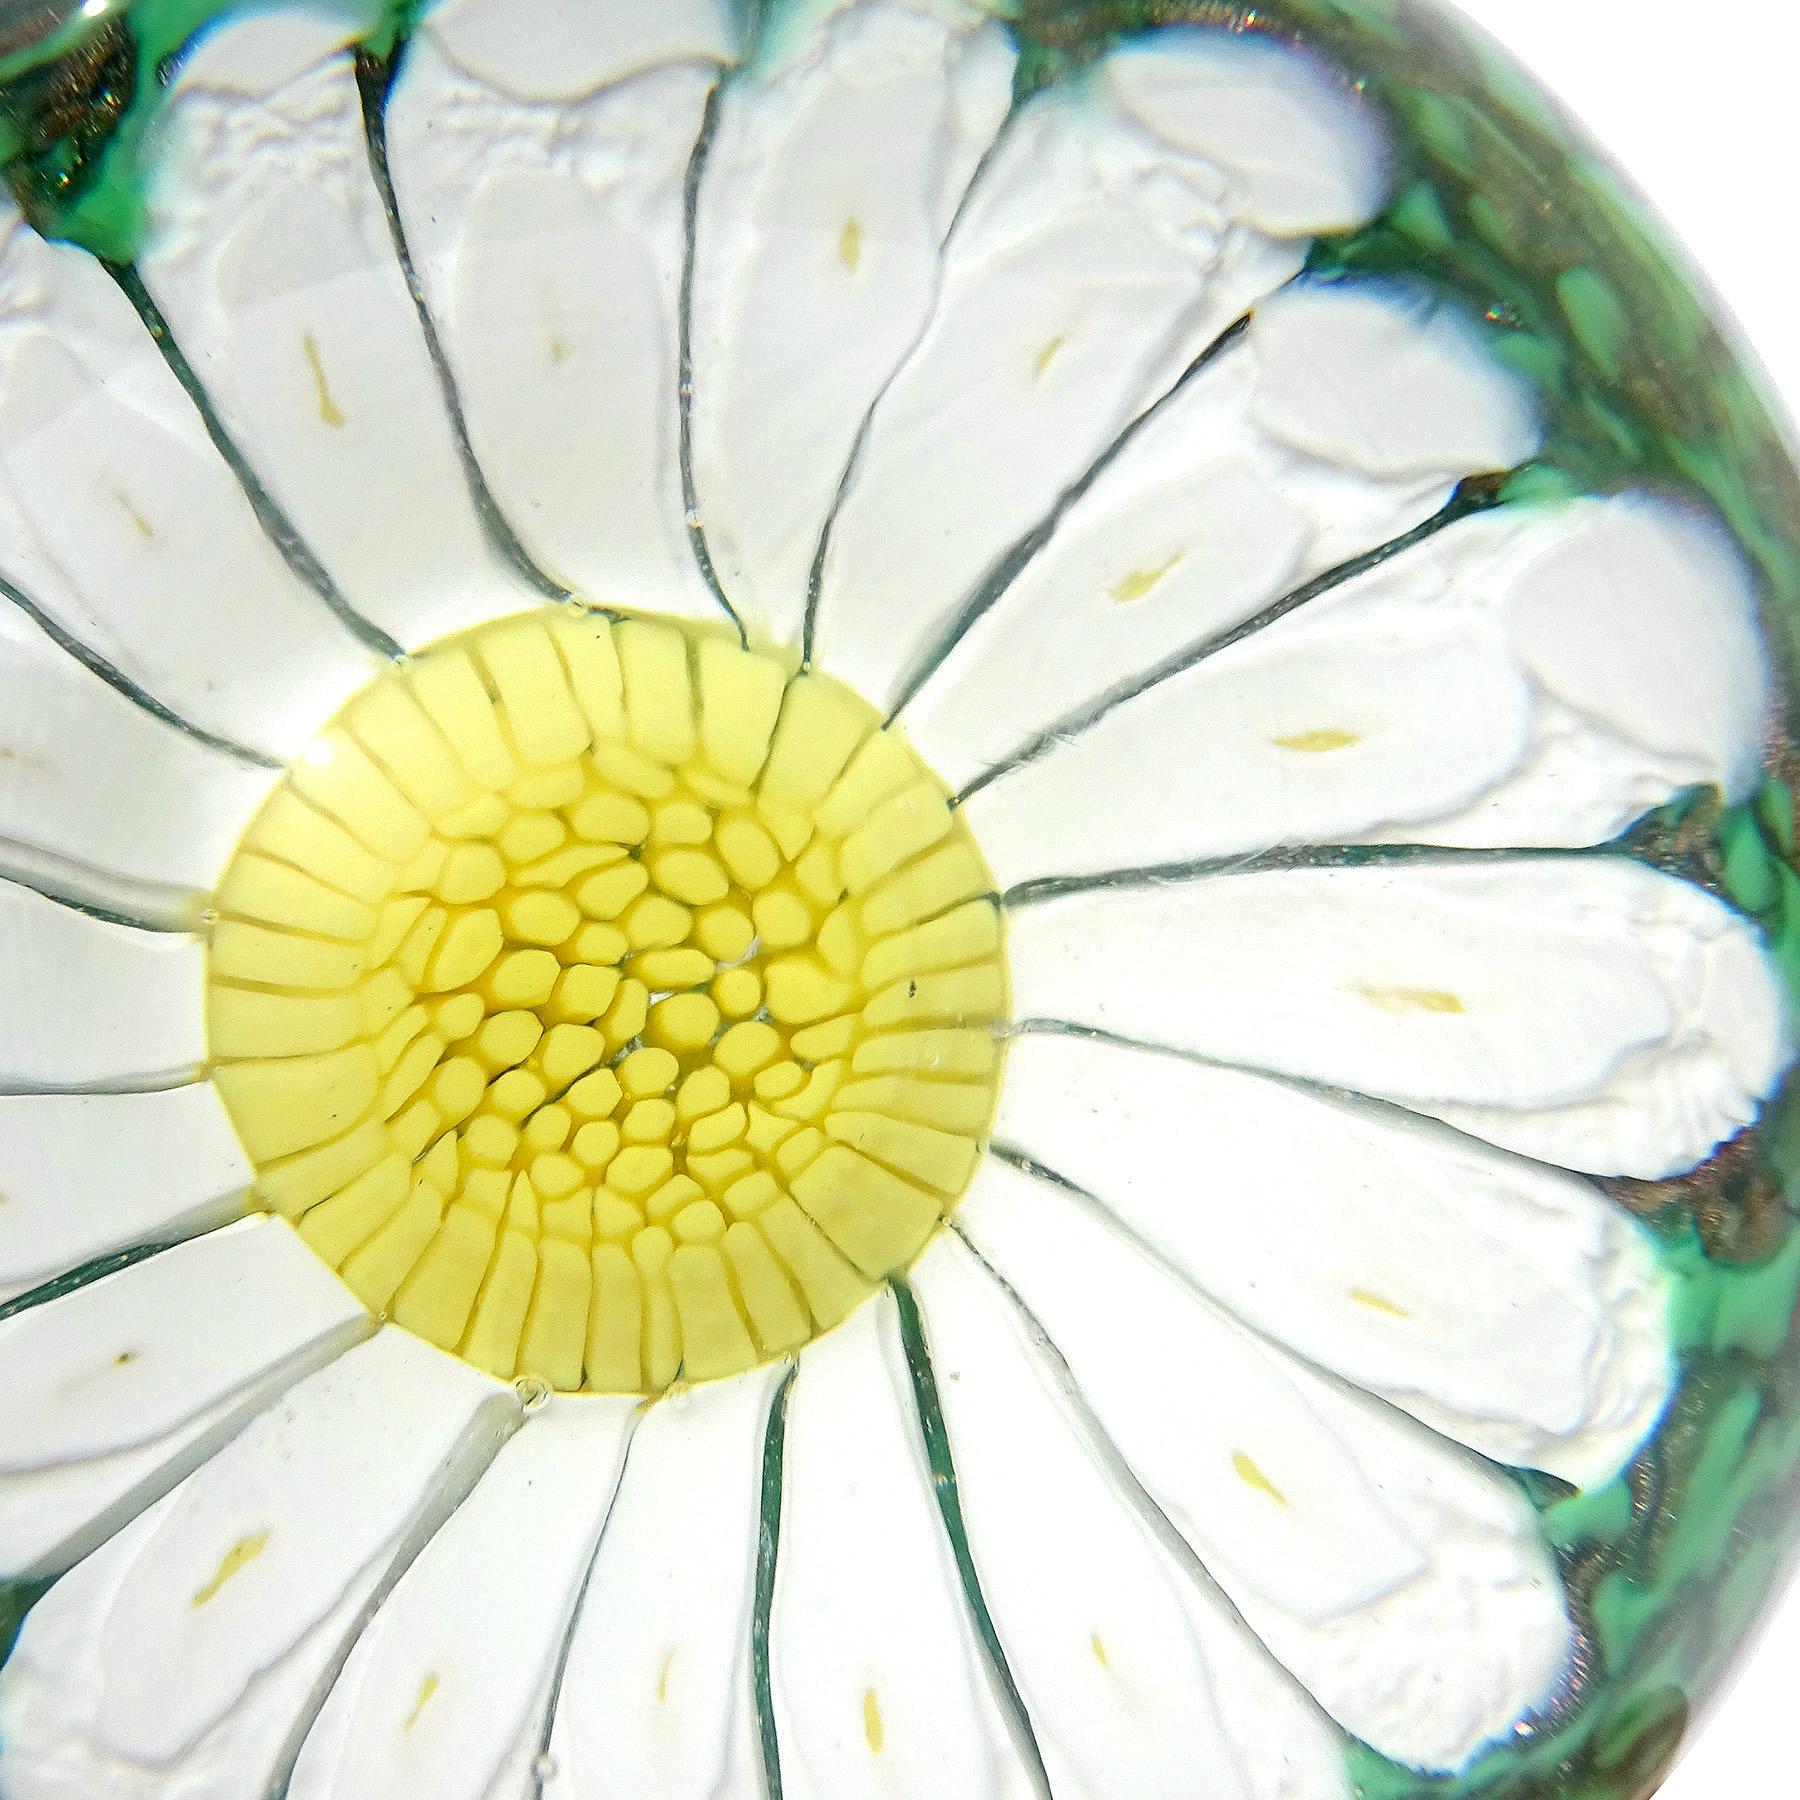 Precioso pisapapeles vintage de cristal artístico italiano de Murano soplado a mano con flores de margaritas blancas y amarillas. Documentado a la empresa Fratelli Toso. El pisapapeles tiene una gran margarita formada por pétalos blancos, con